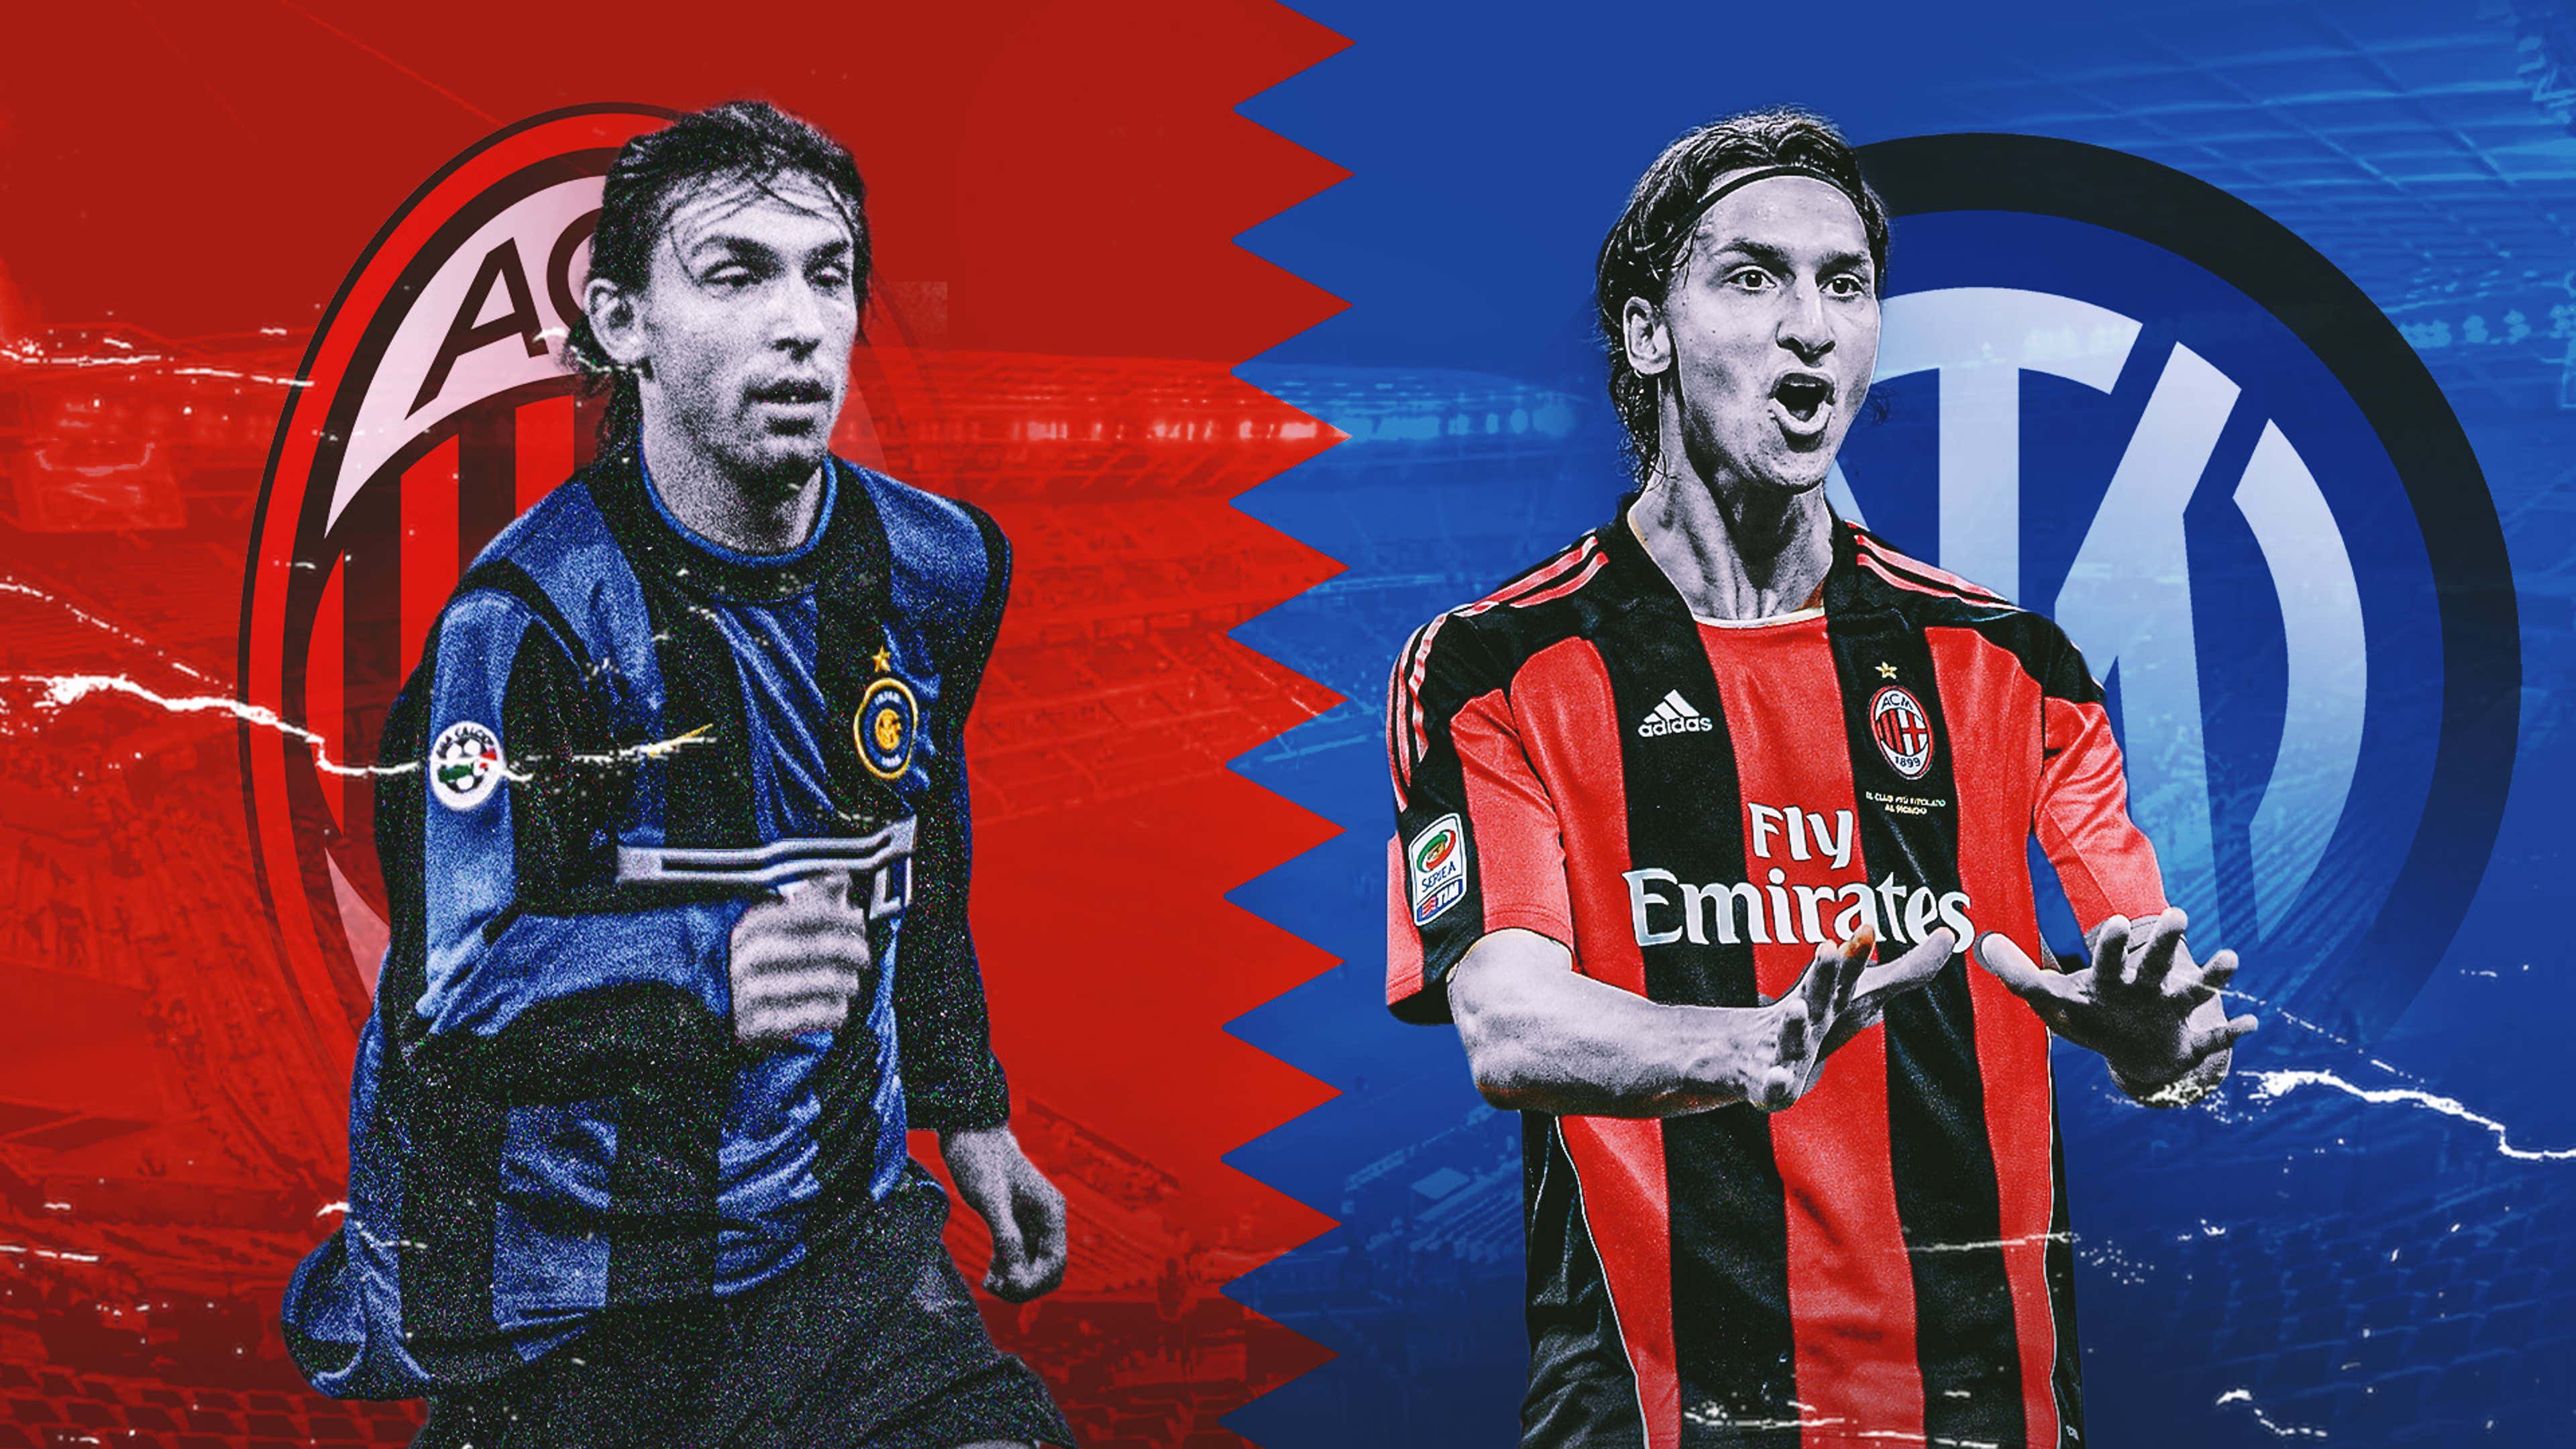 O top dos times da Serie A italiana e o destaque do AC Milan